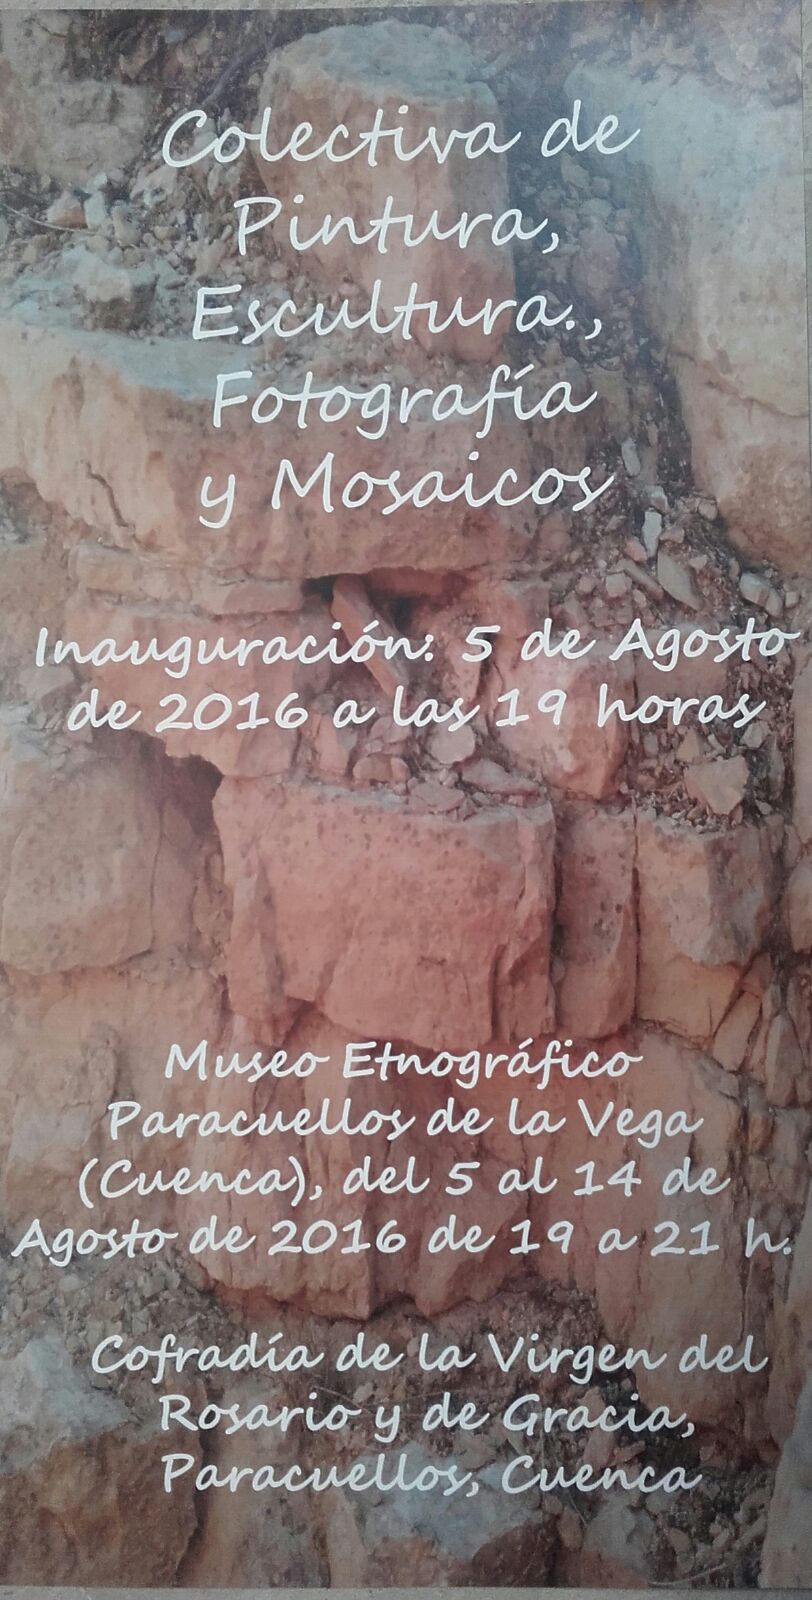 Museo-etnografico-Paracuellos-05-al-14-agosto-2016